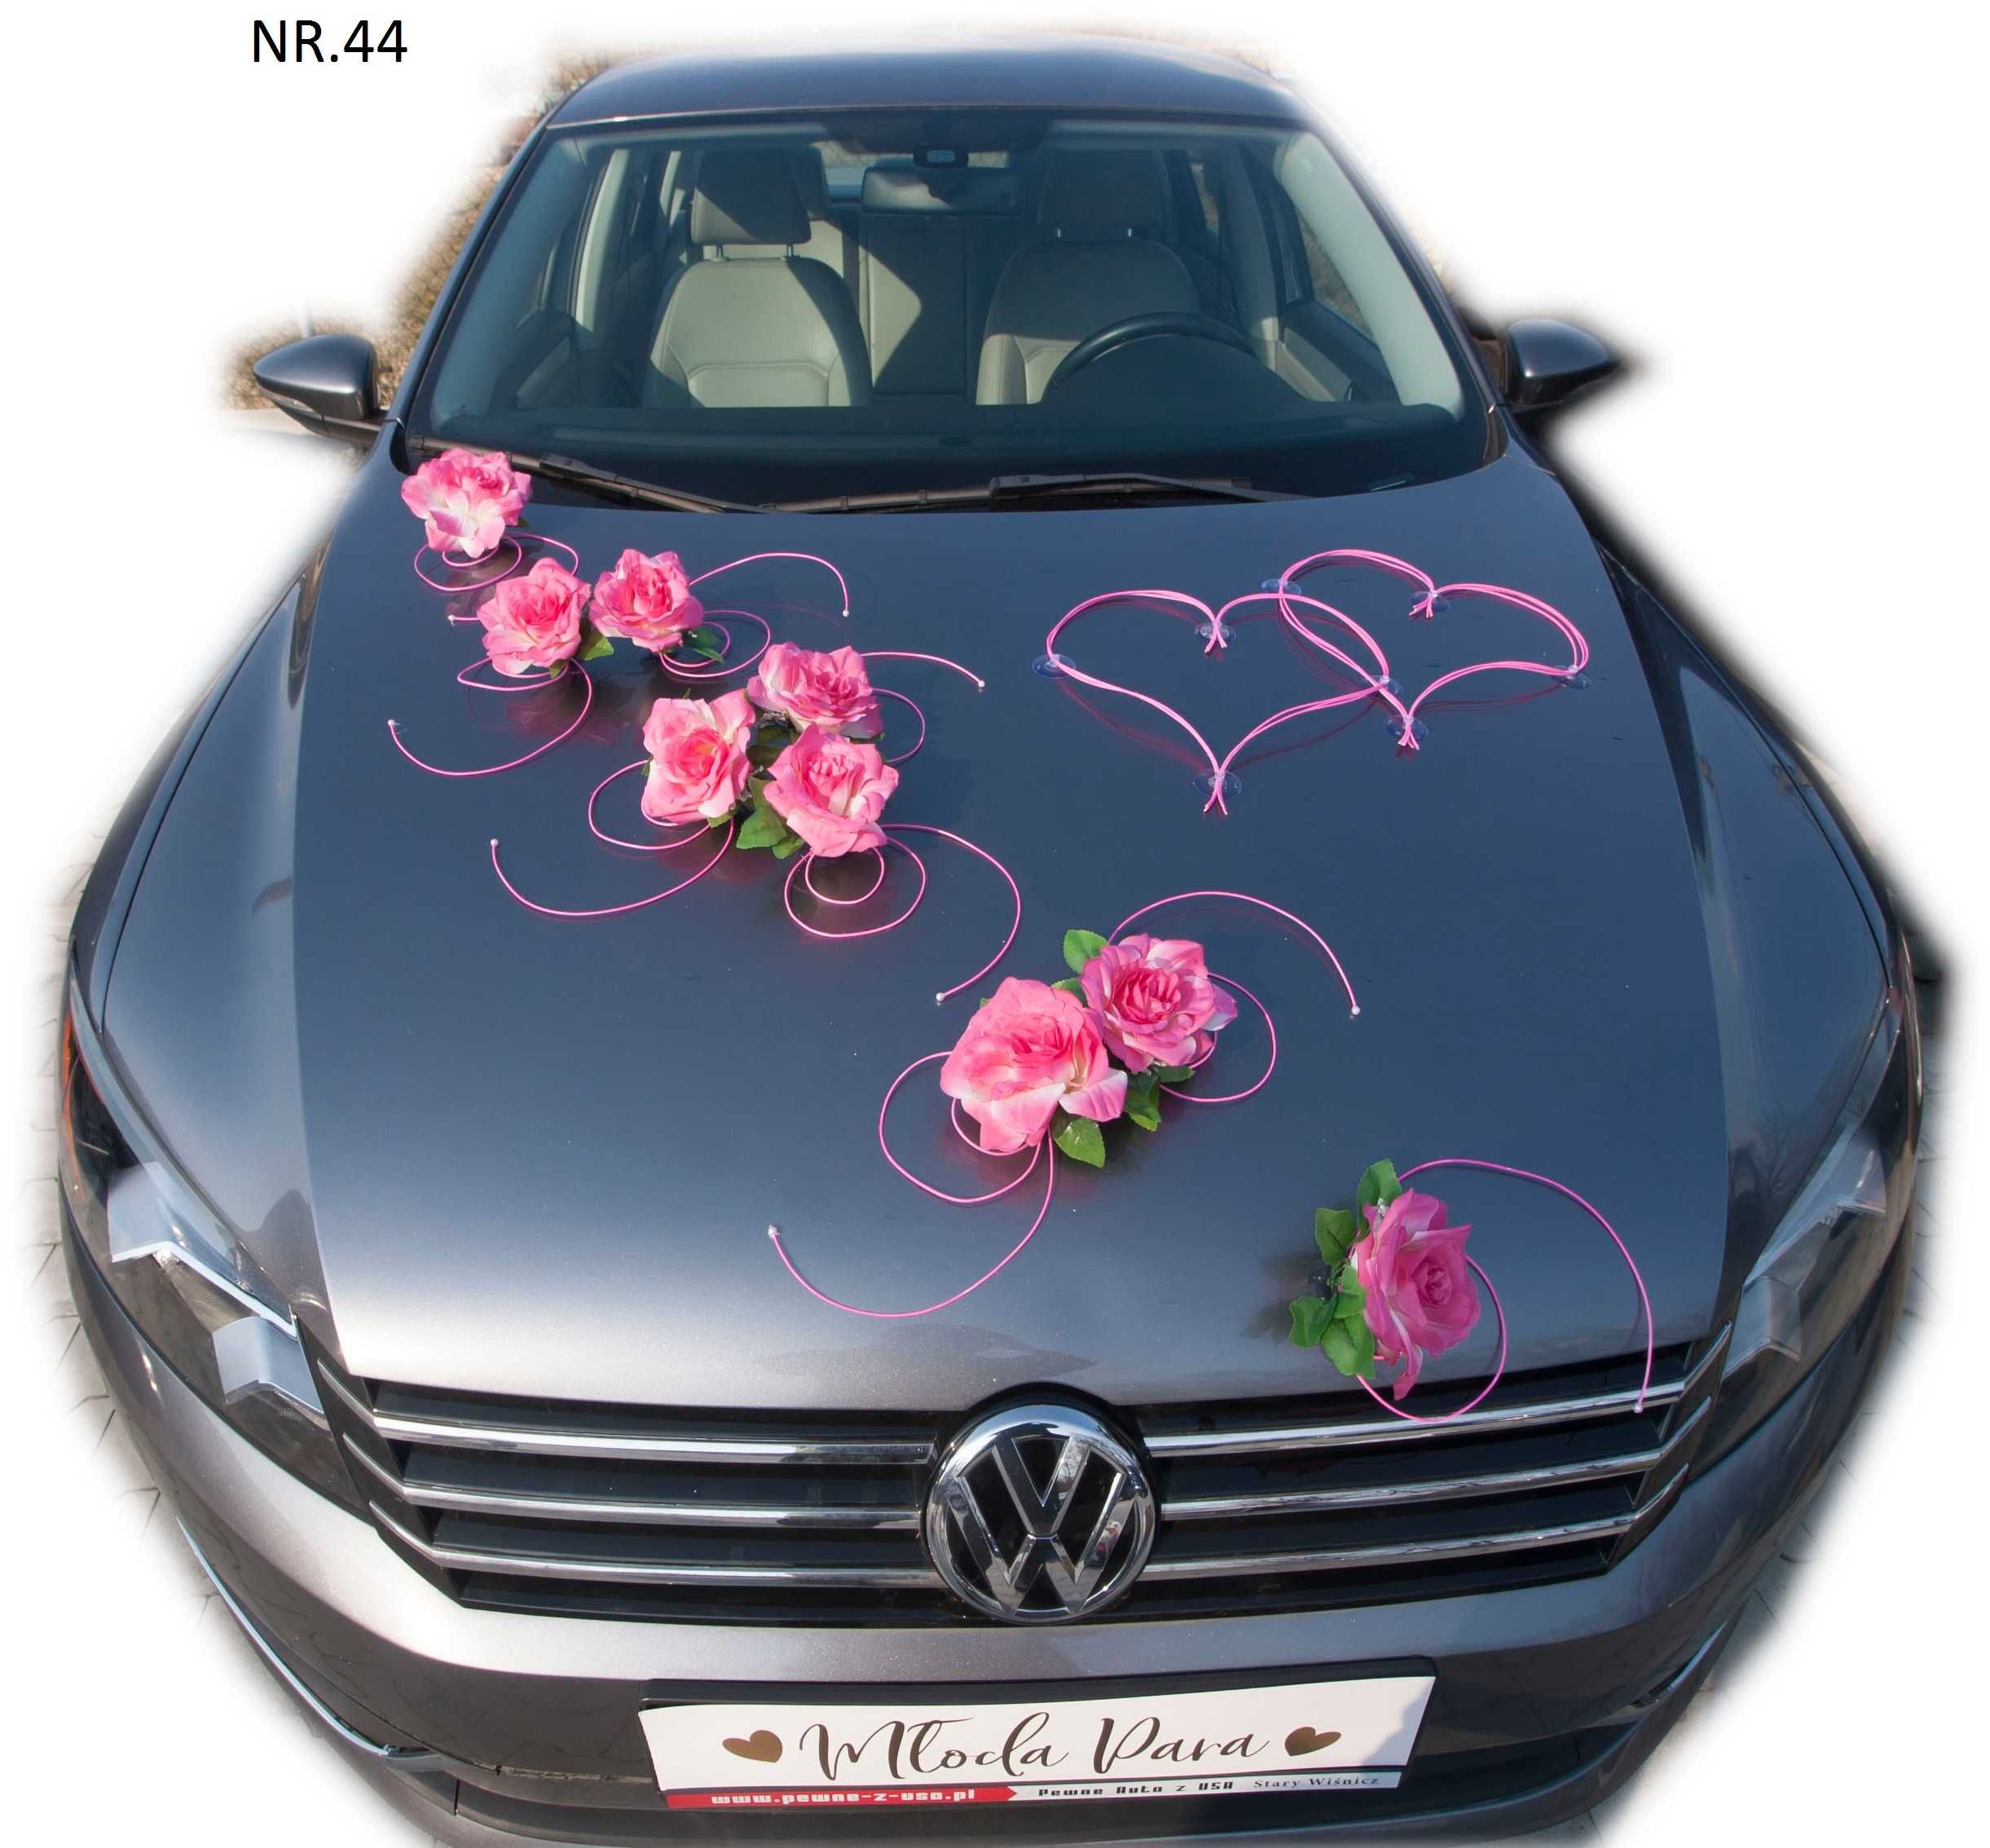 Przystrojenie różowe na każdy samochód ślubny od FIRMY 044